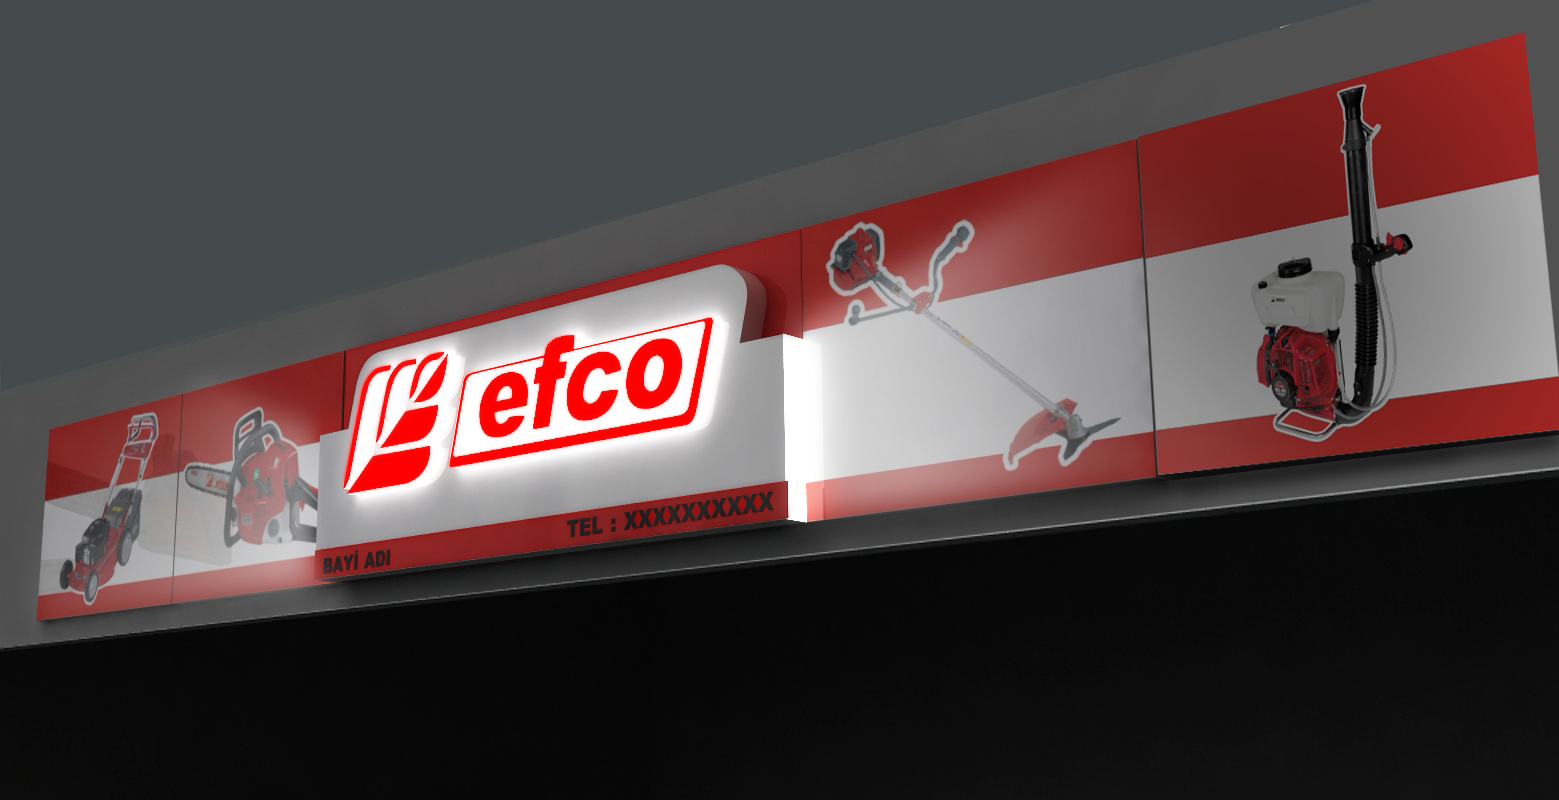 Efco Dealer Signboard